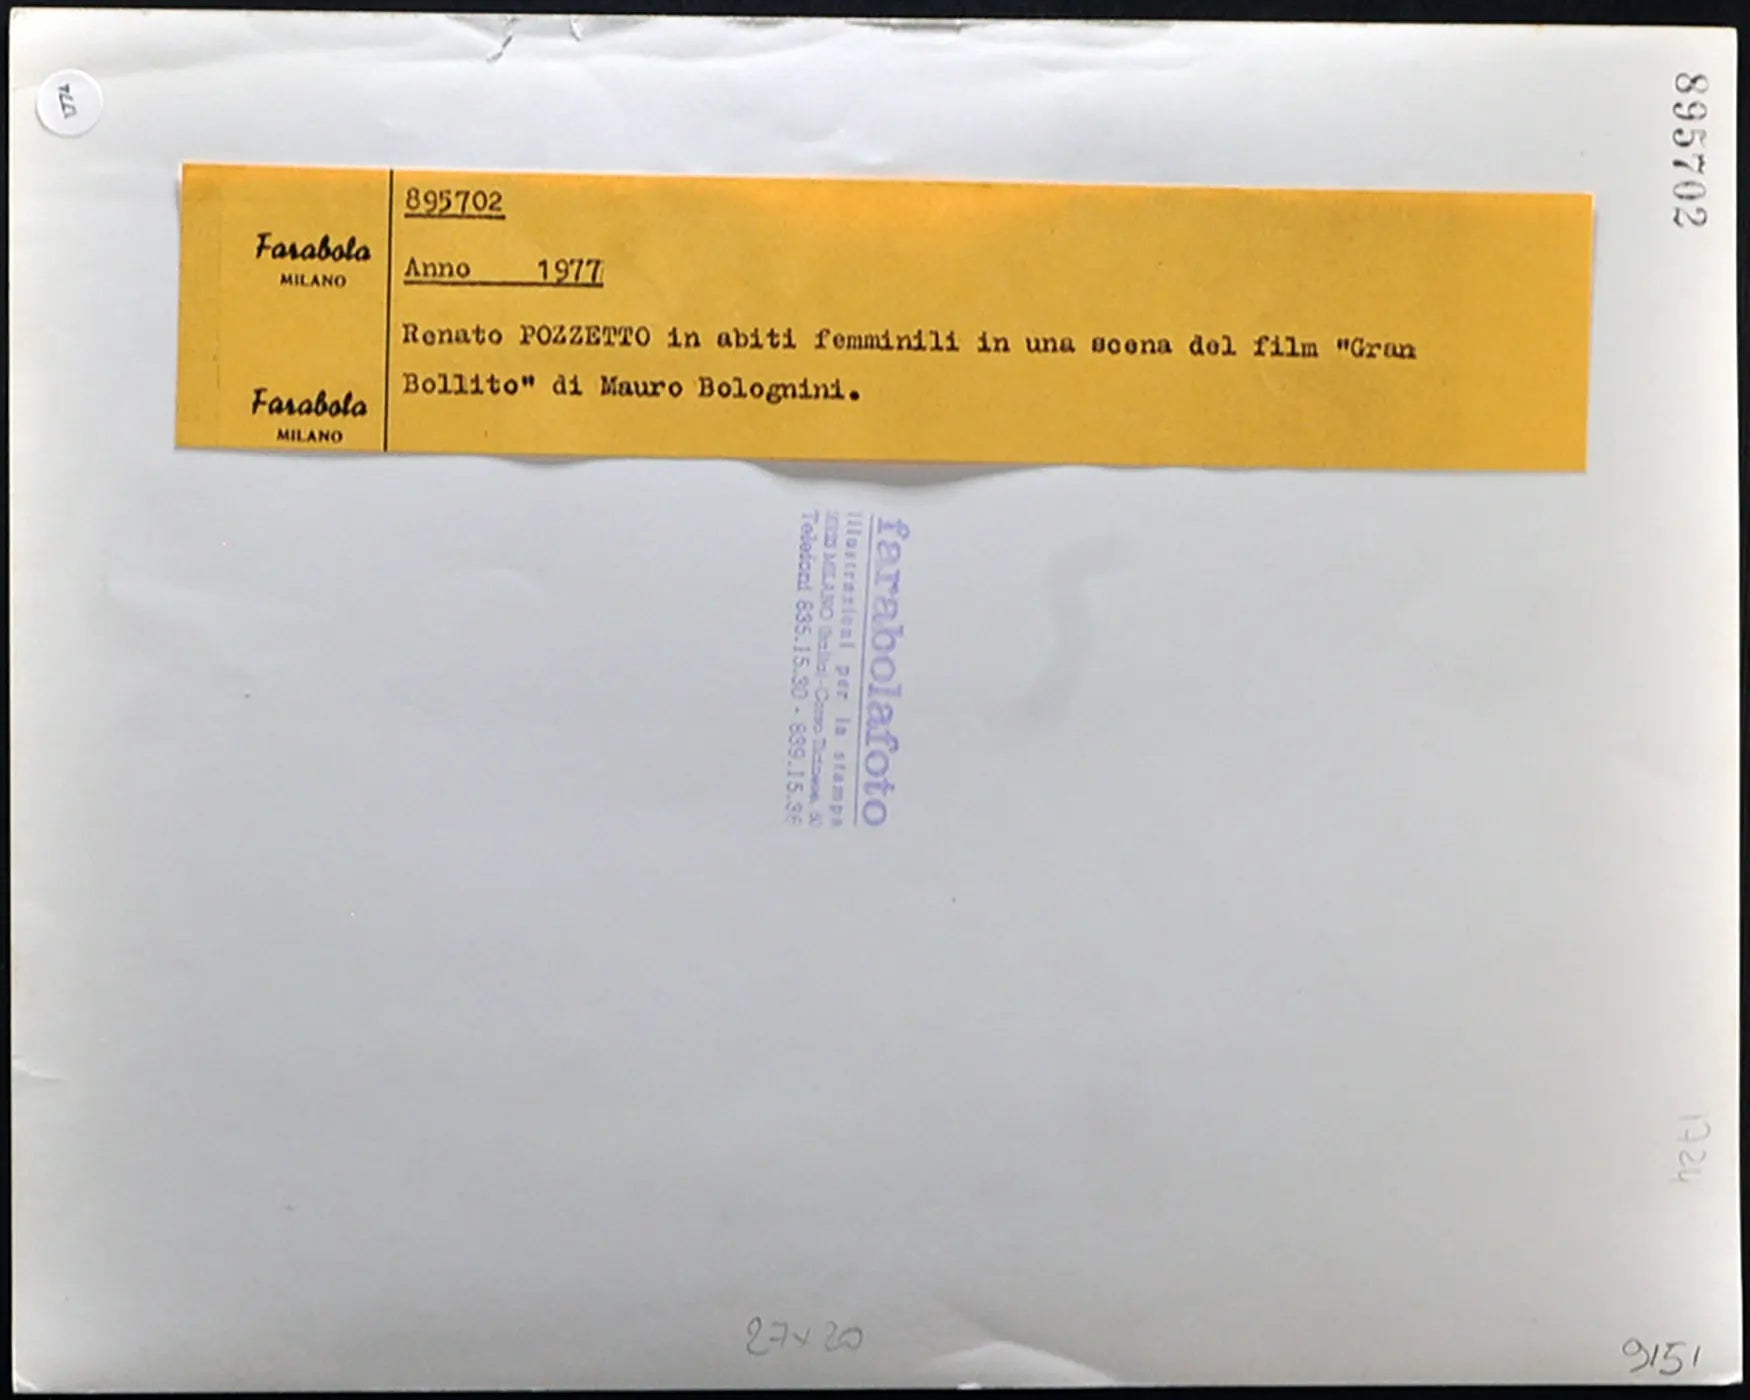 Renato Pozzetto Film Gran Bollito 1977 Ft 1774 - Stampa 21x27 cm - Farabola Stampa ai sali d'argento